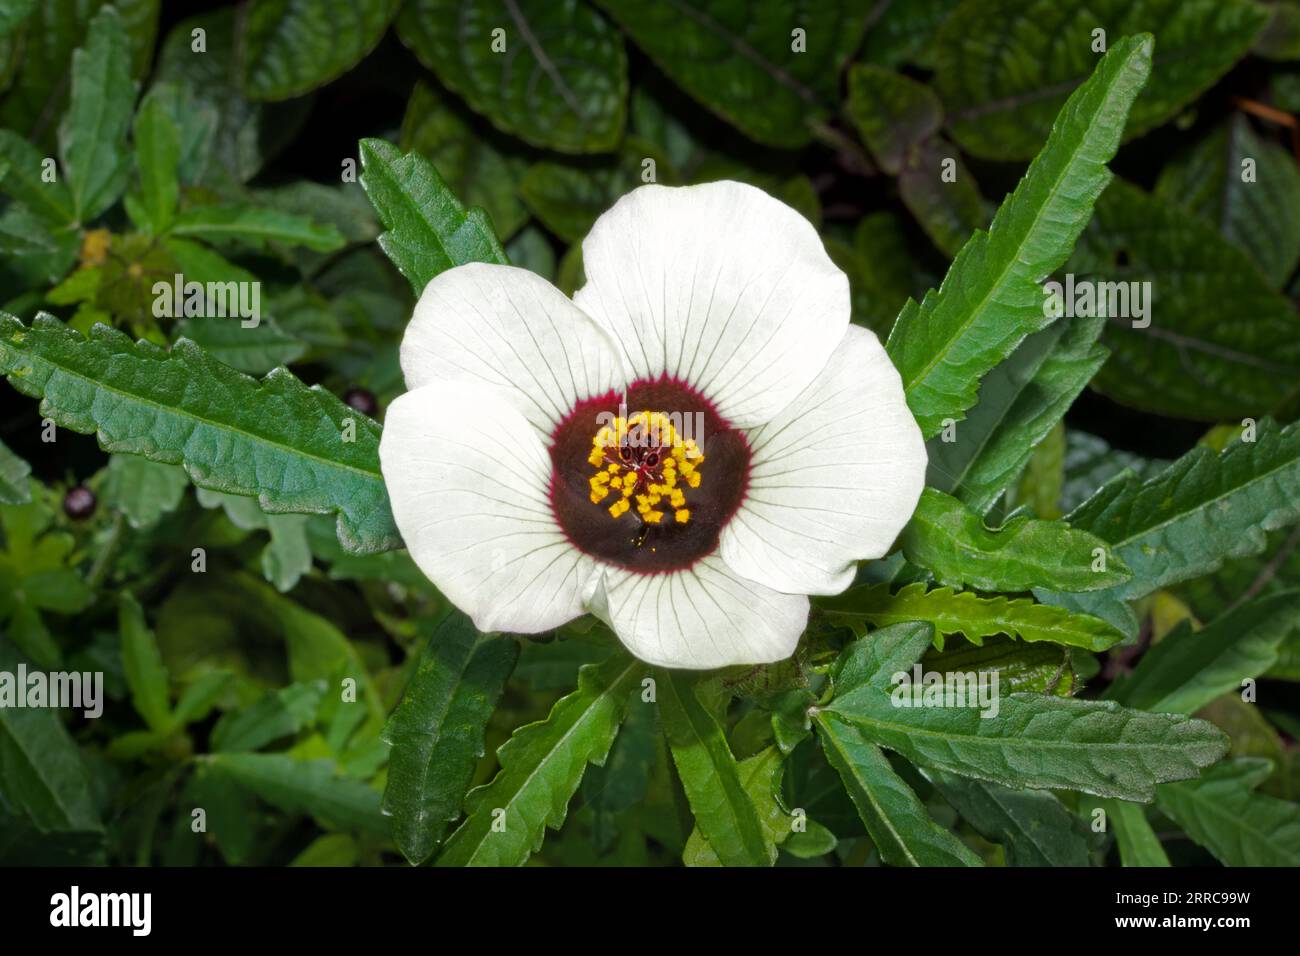 Hibiscus trionum (fiore di un'ora) è originario dei tropici e subtropicali del Vecchio mondo. Oggi è comunemente coltivata come pianta da giardino. Foto Stock